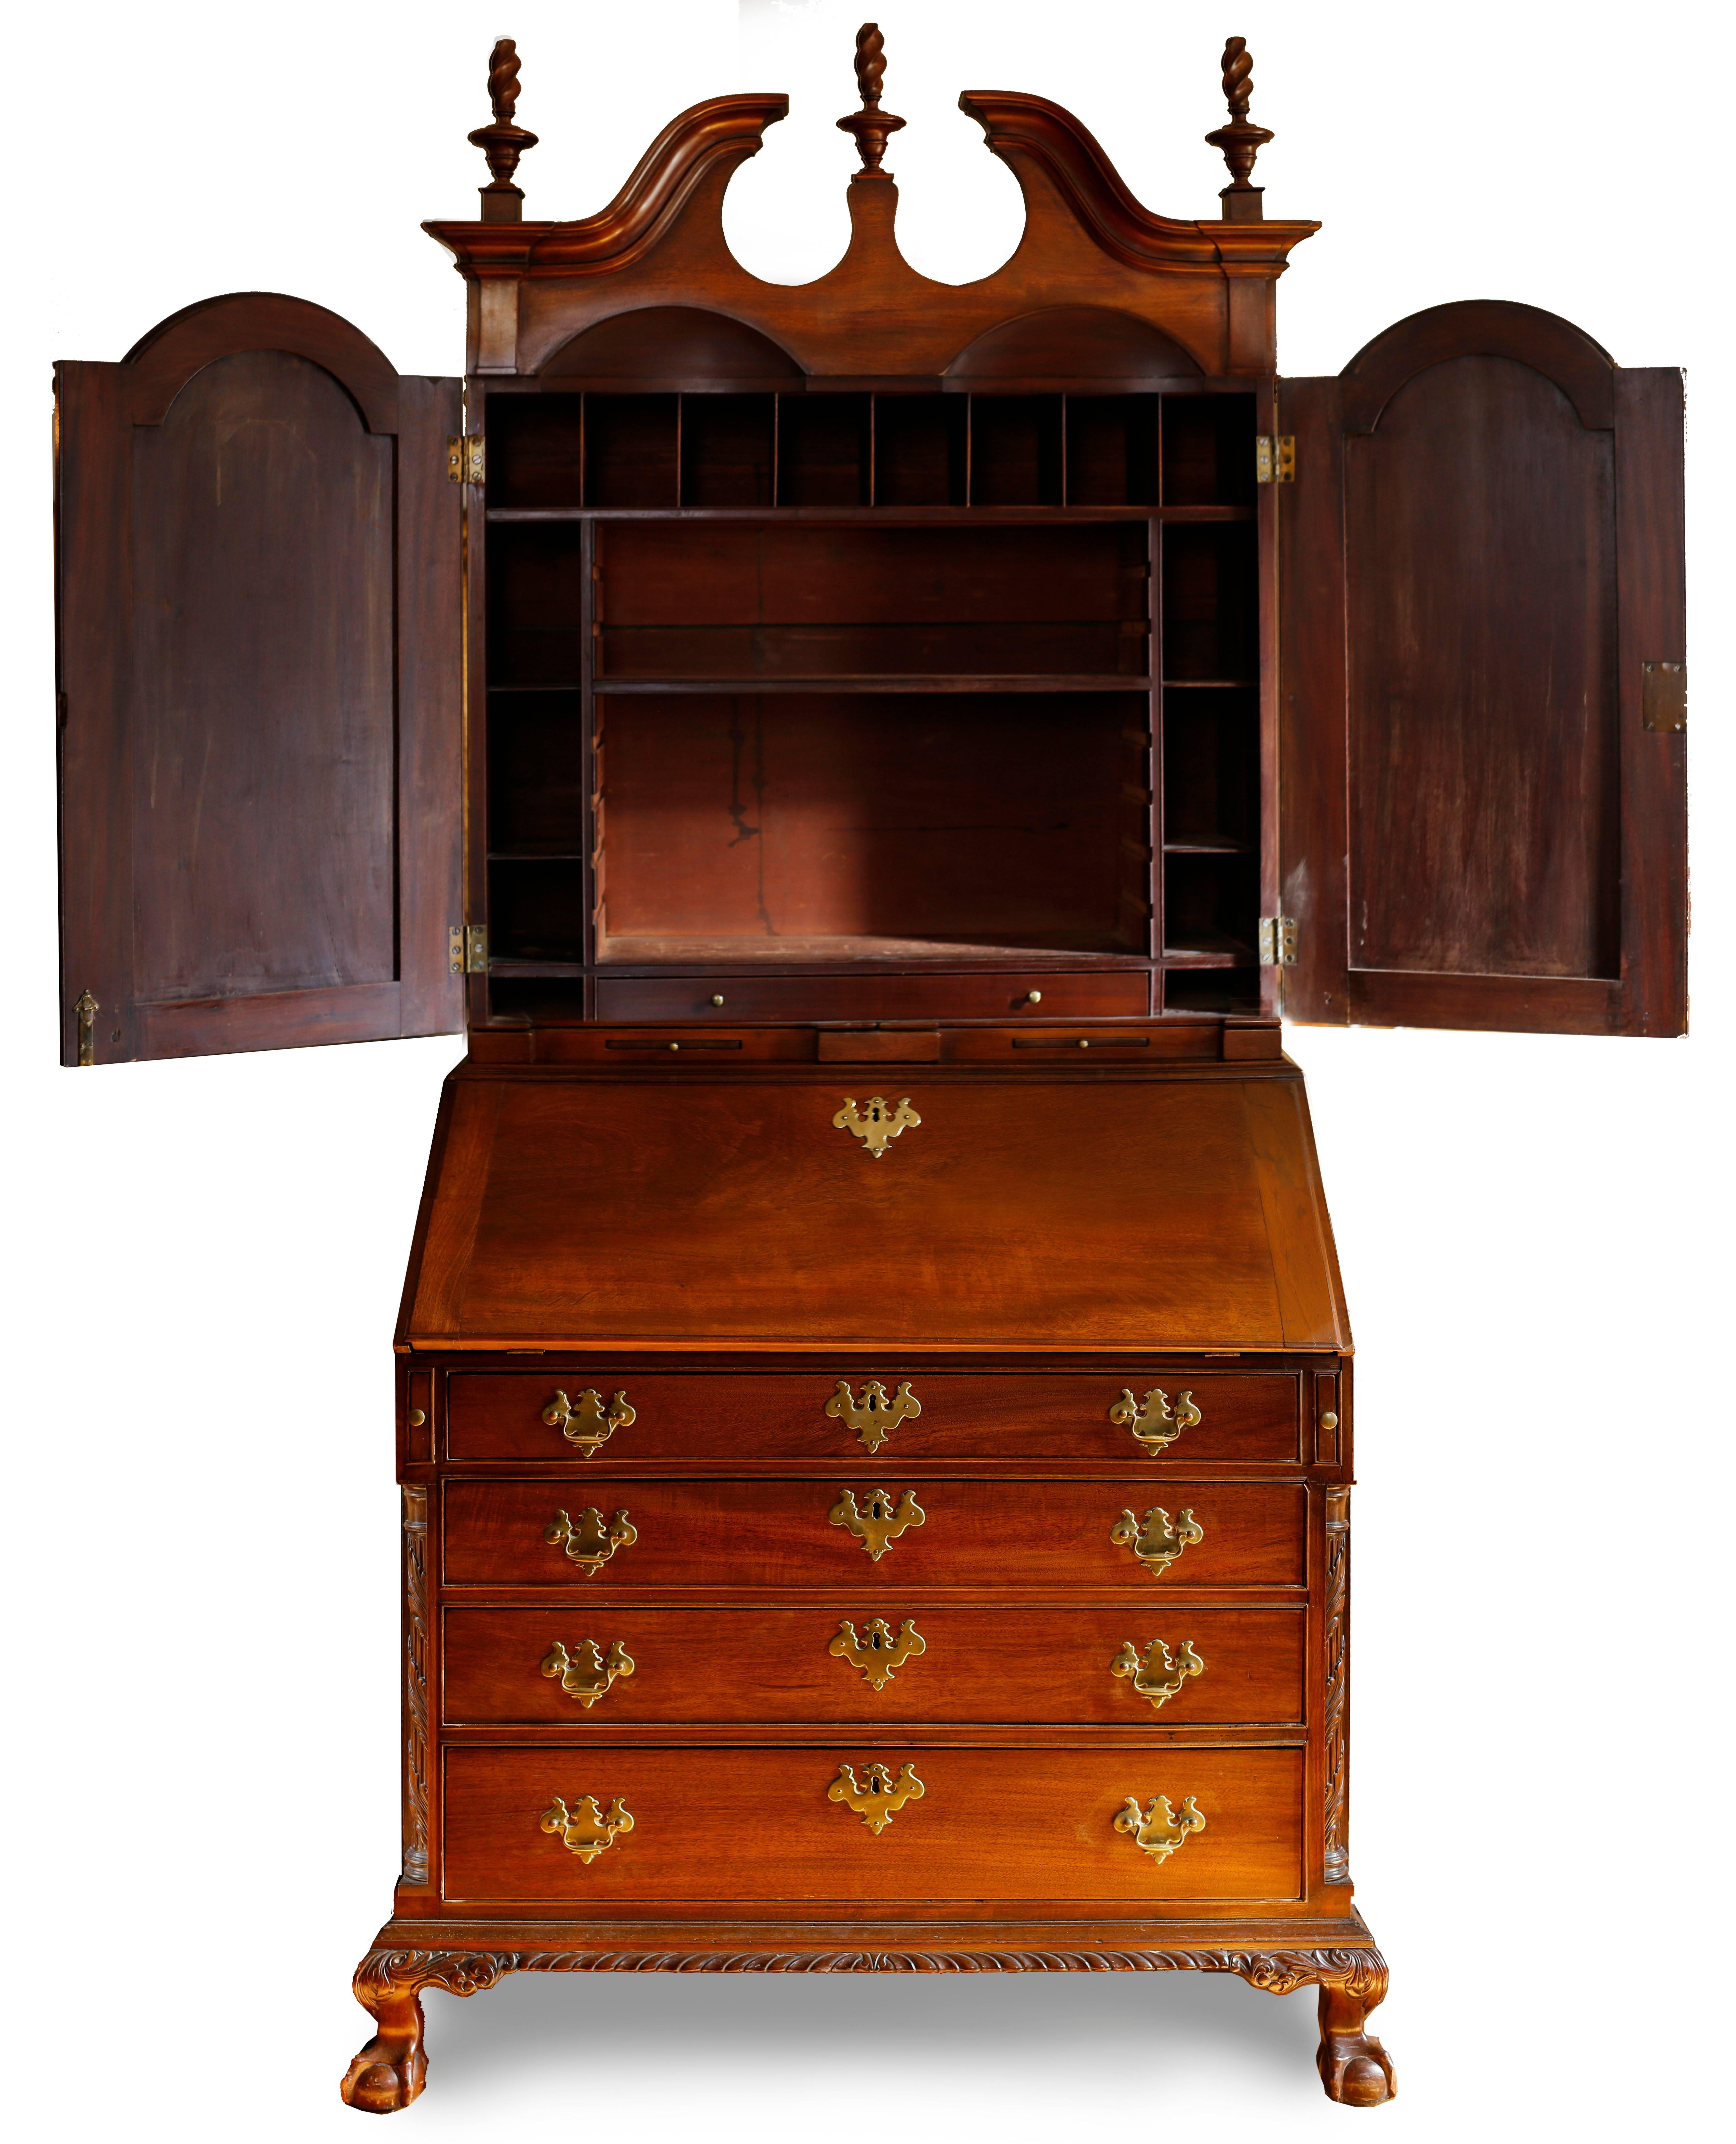 Dieses atemberaubende Stück früher amerikanischer Möbel mit hervorragender Provenienz wurde von einer der besten Firmen im Boston des 18. Jahrhunderts entworfen und gebaut und zeichnet sich durch seine feinen klassischen Formen und Proportionen aus.